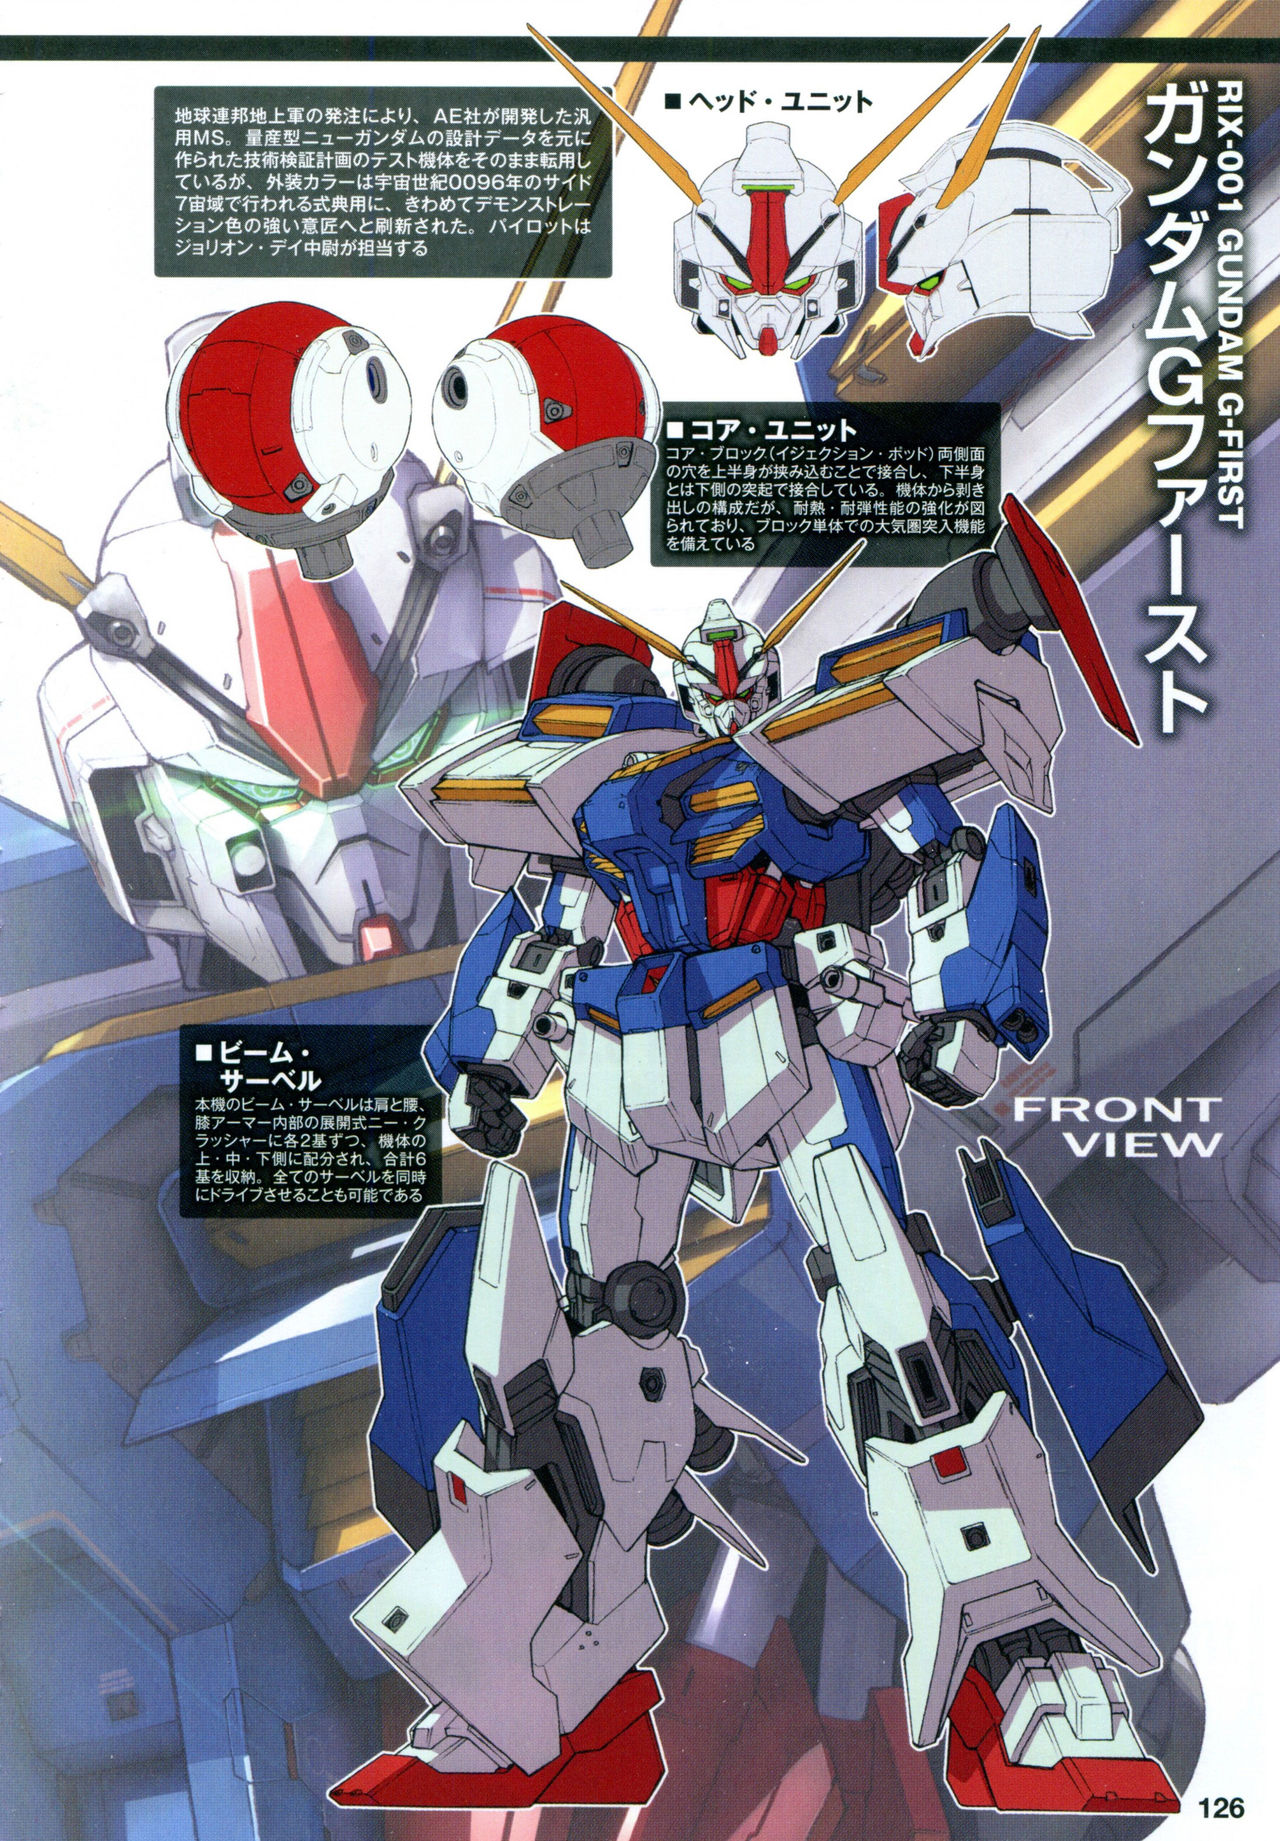 ガンダムu C 0096 ラスト サン 公式外伝なのに魔改造ぶりが凄い Gundam Log ガンダムまとめブログ